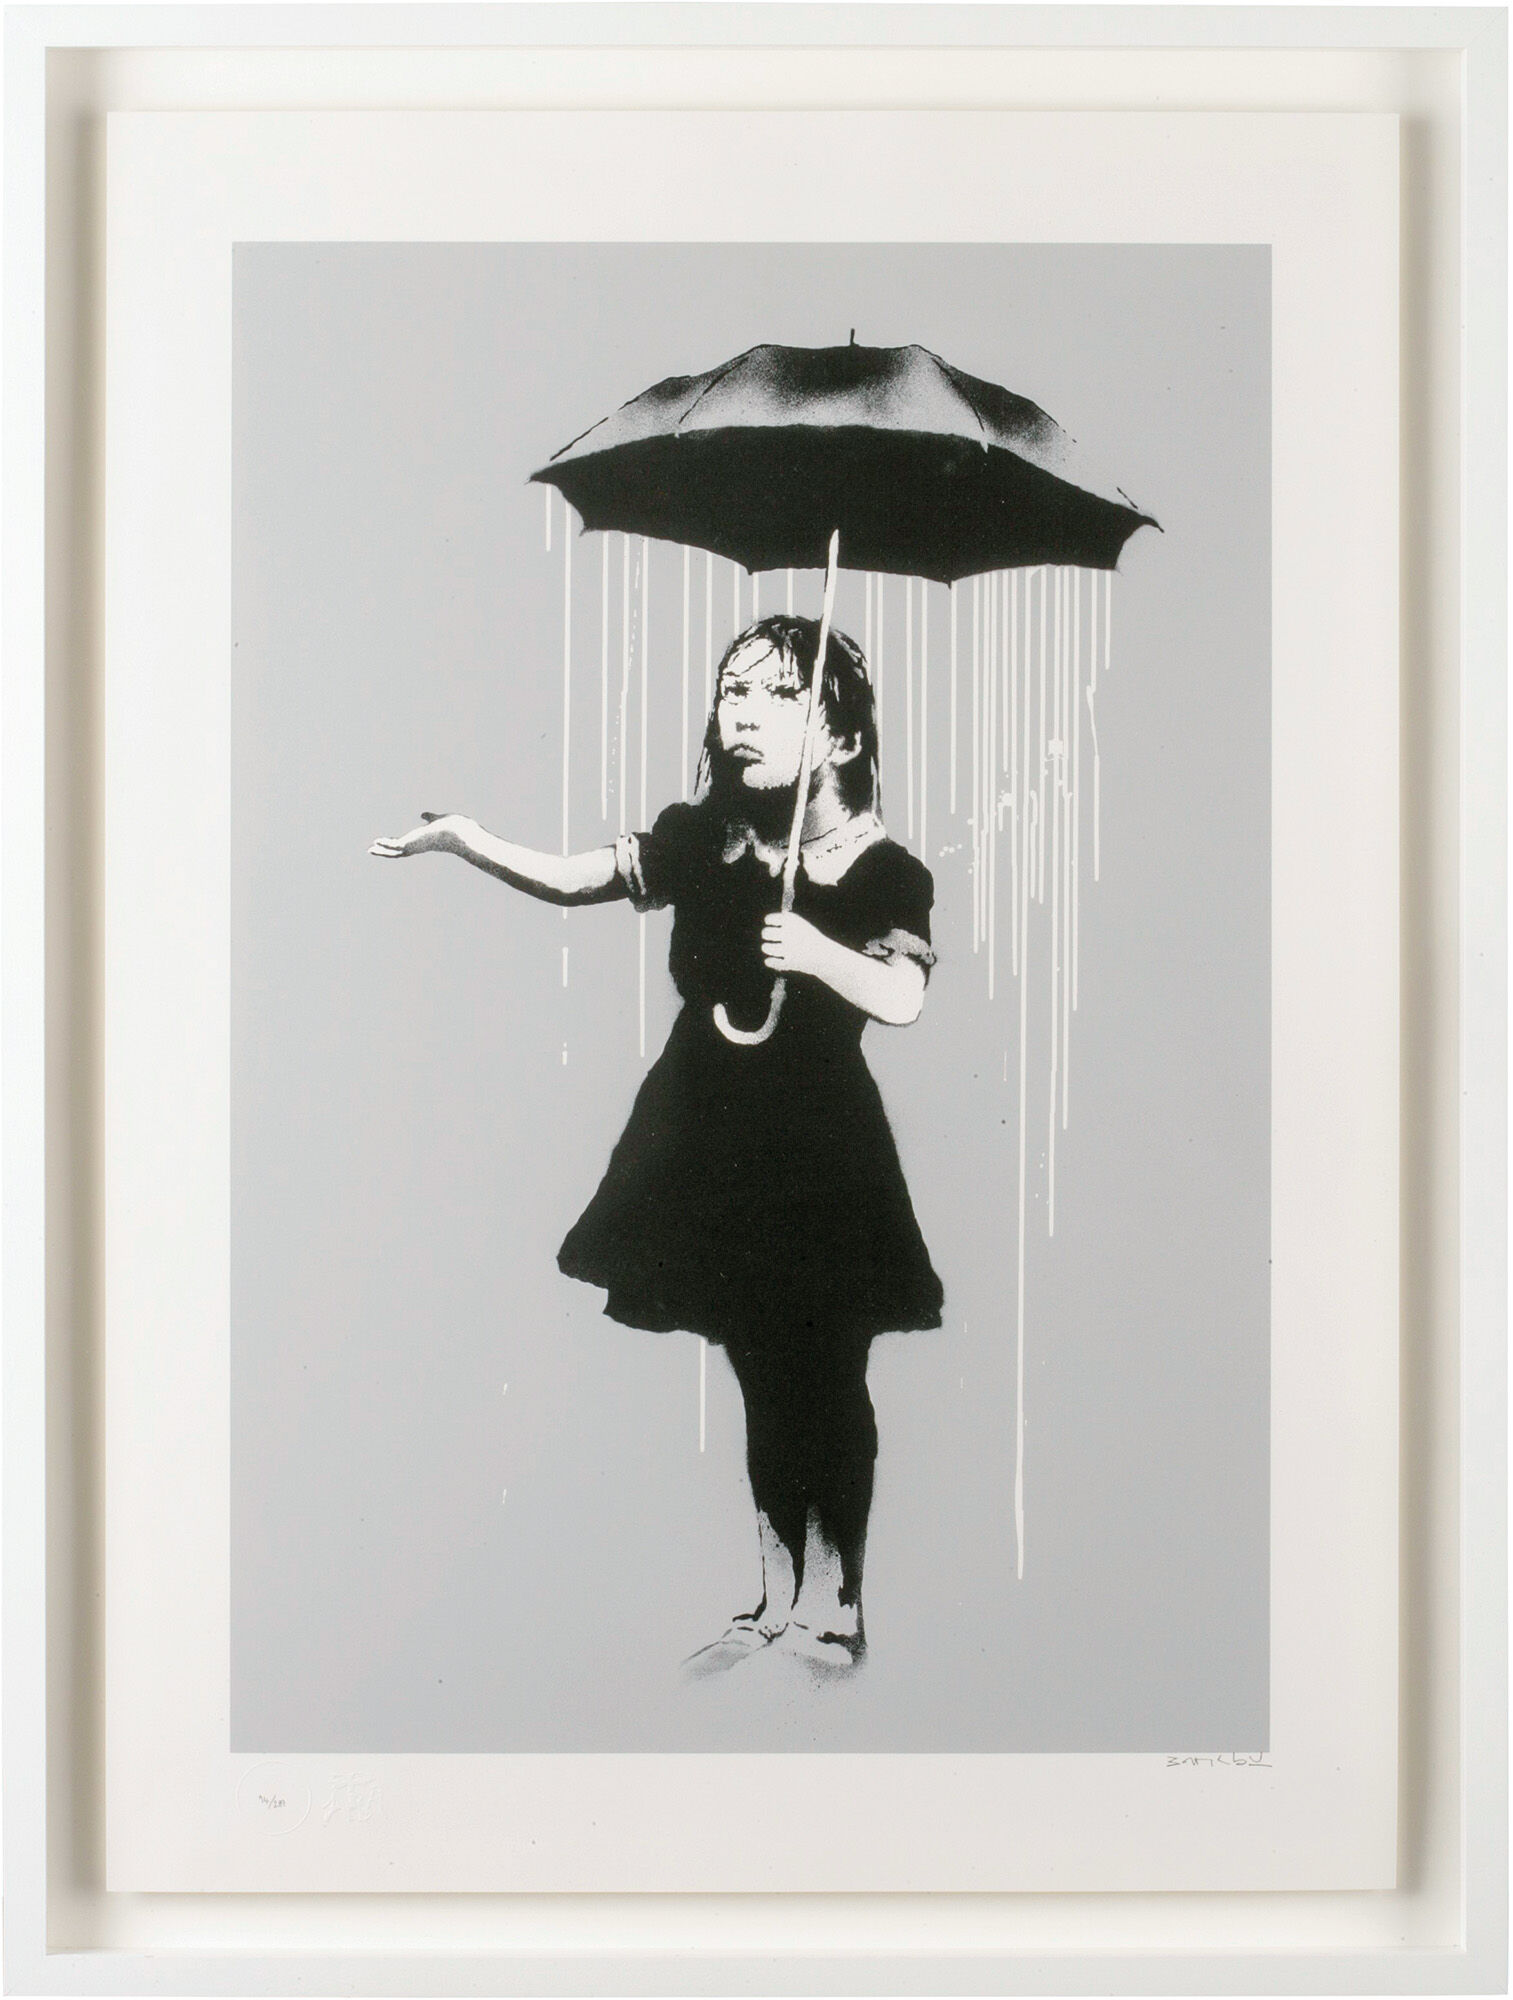 Bild "Nola (white rain)" (2008) von Banksy